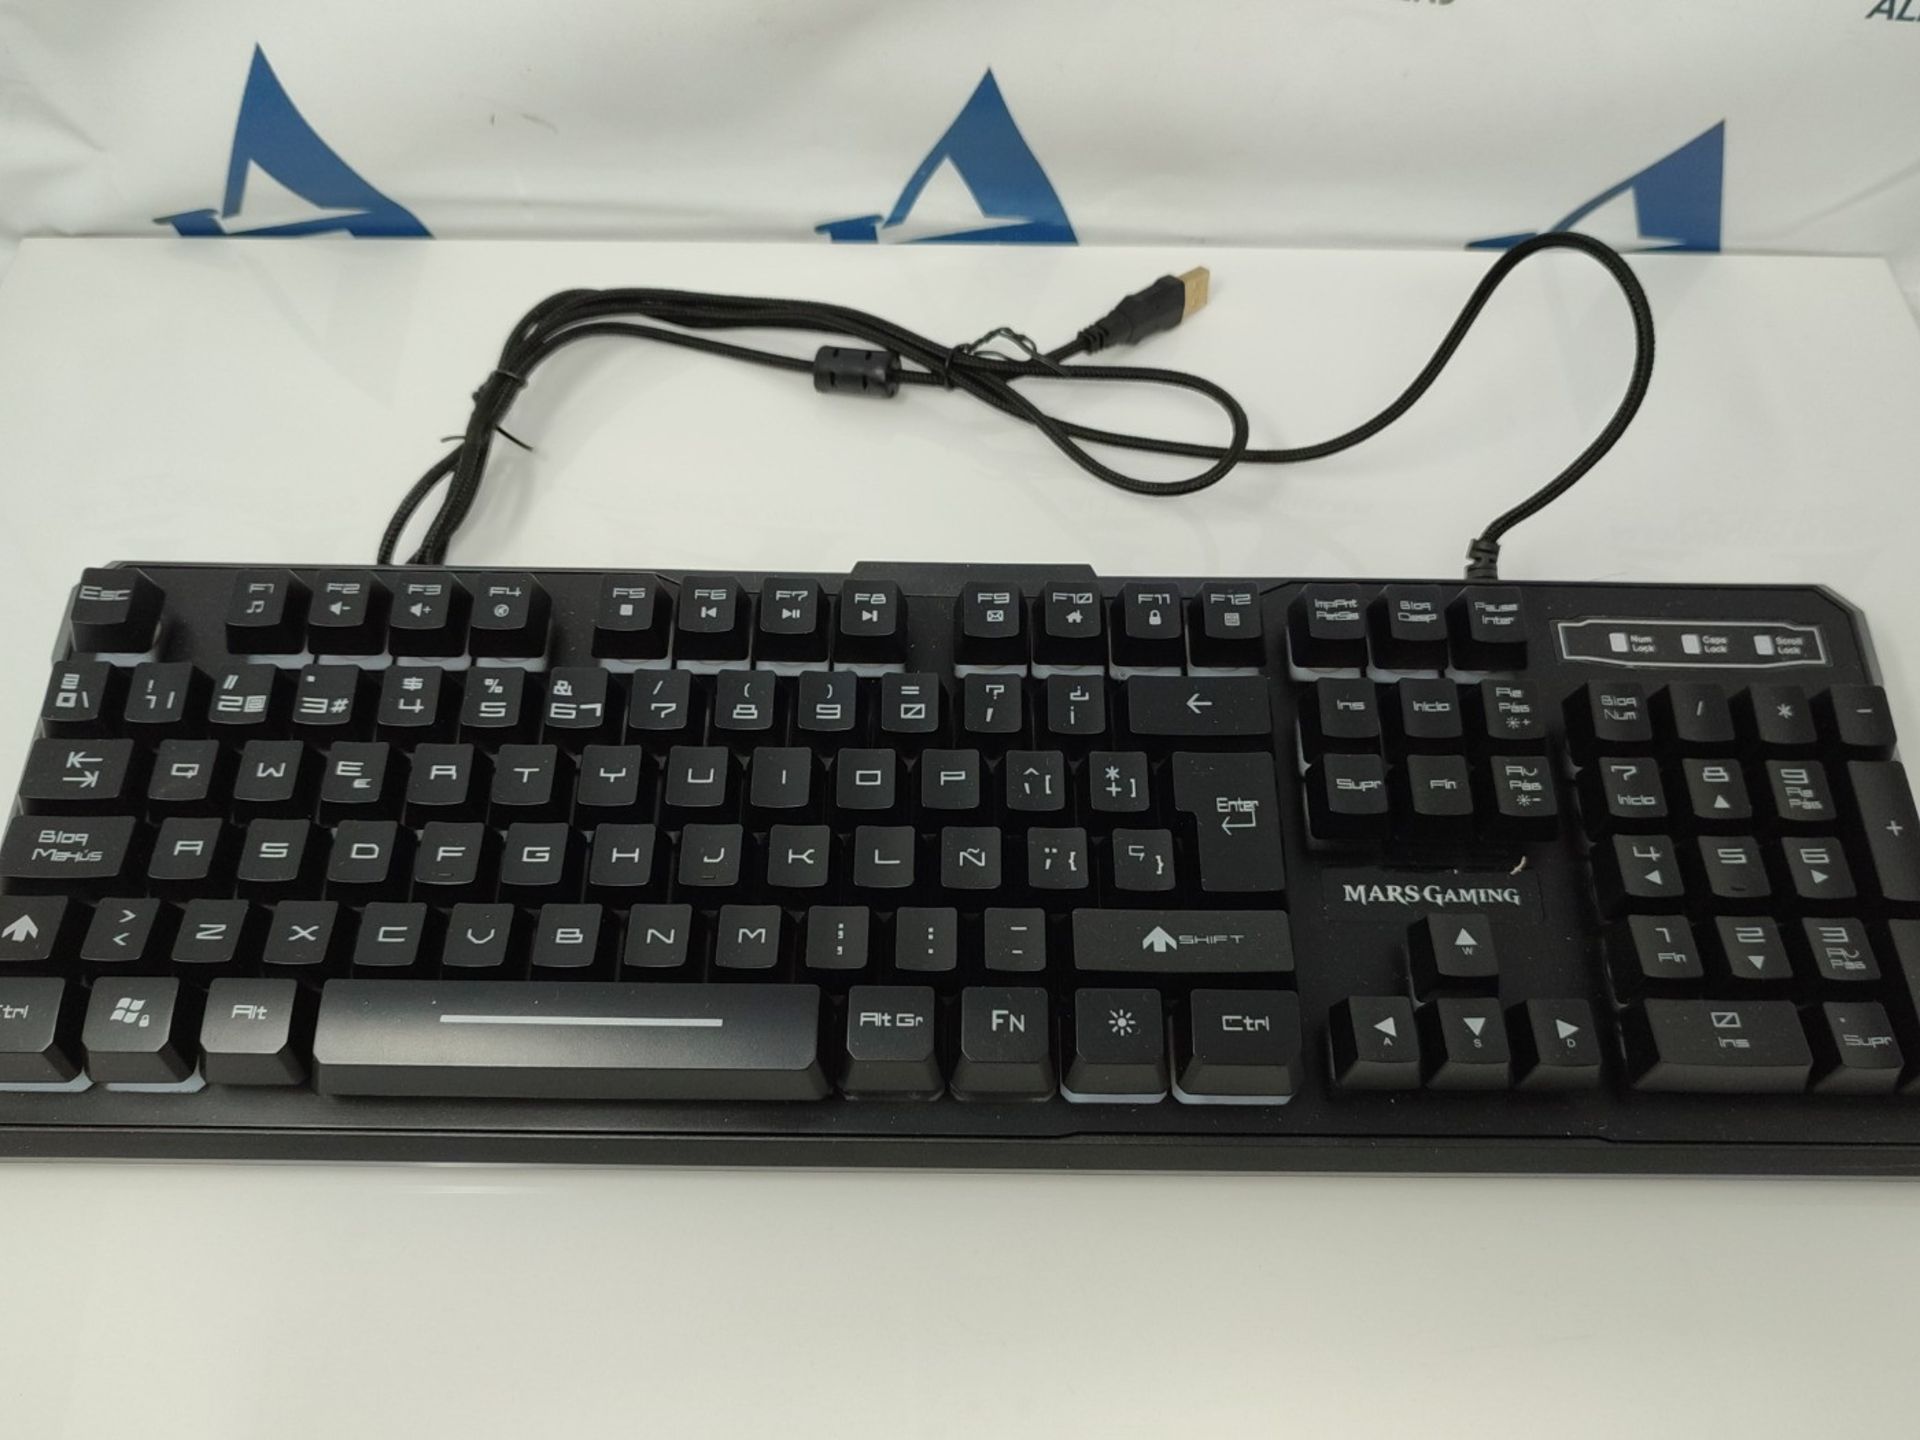 Mars Gaming Keyboard. MK218 Black - Image 3 of 3